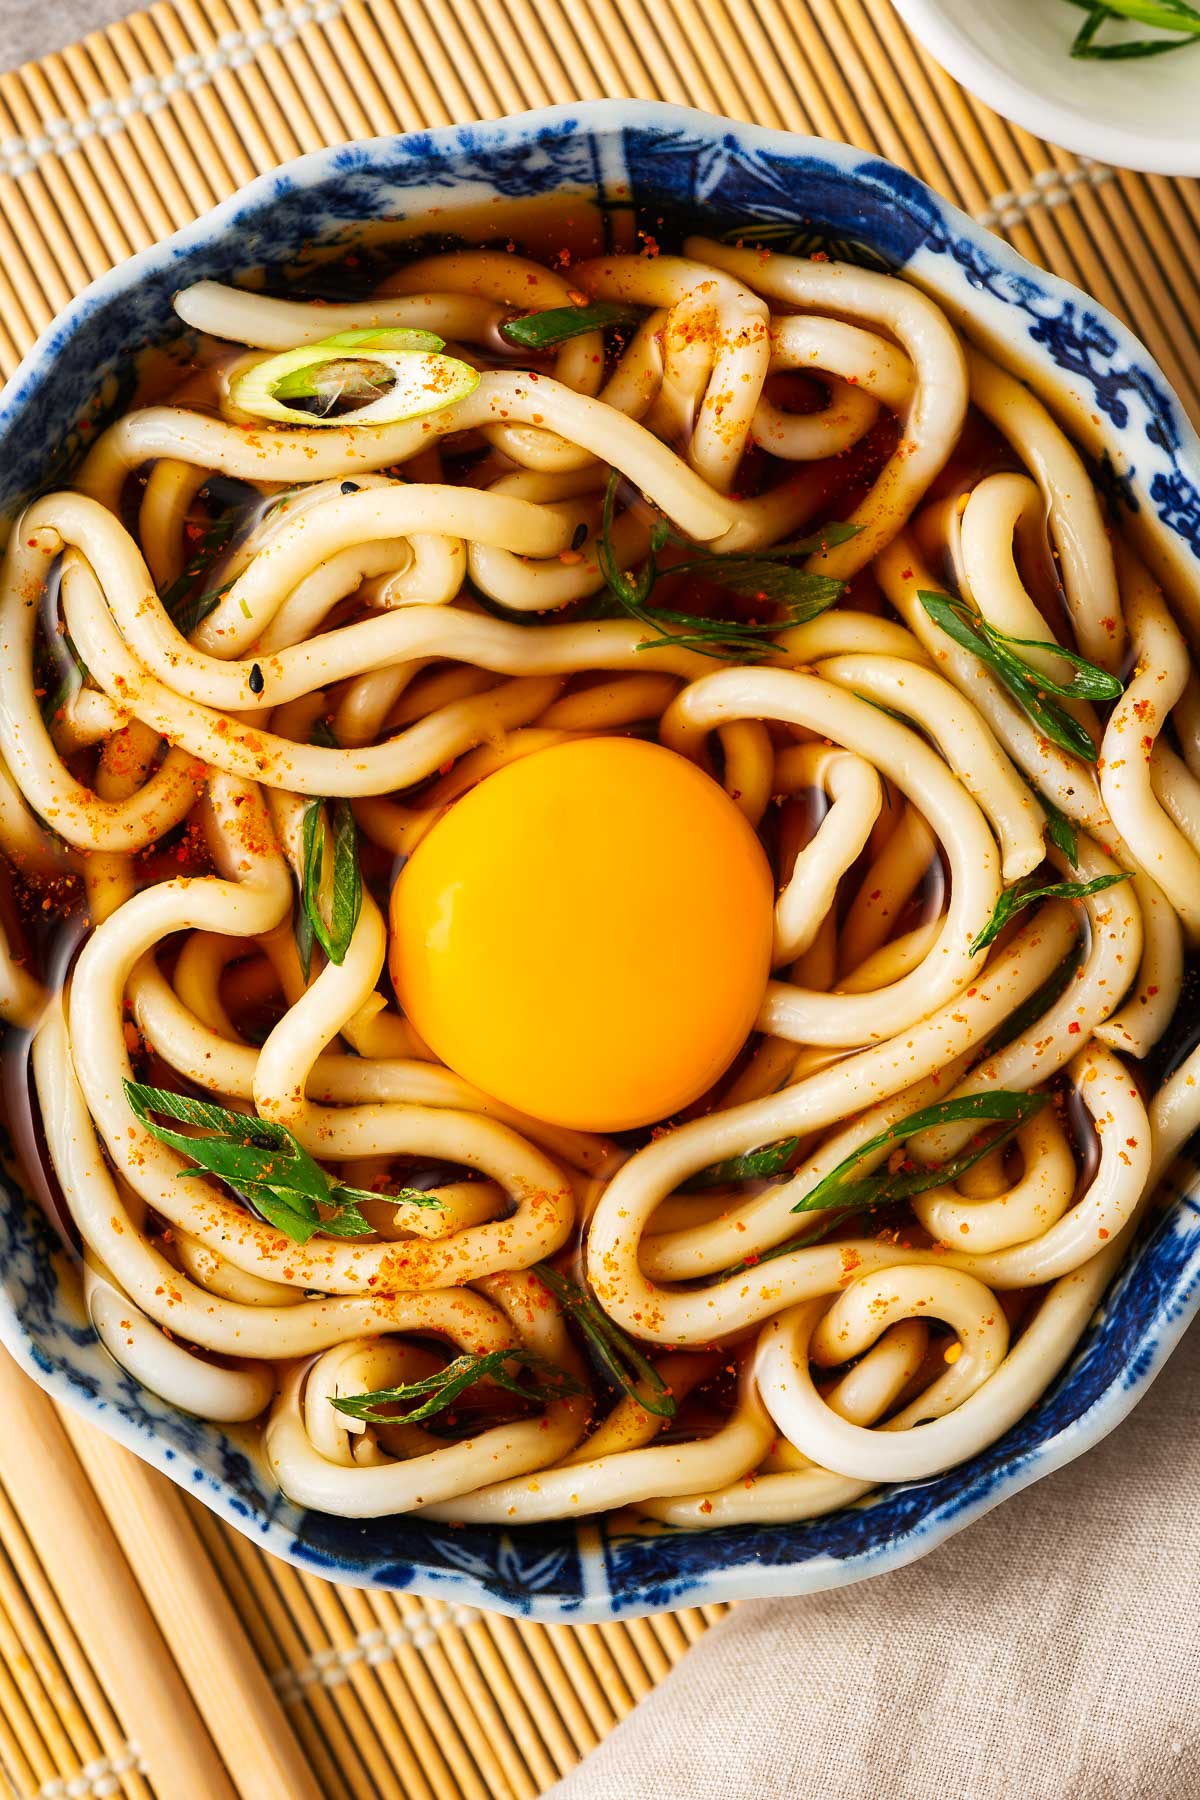 A raw egg yolk nestled into udon noodle soup.